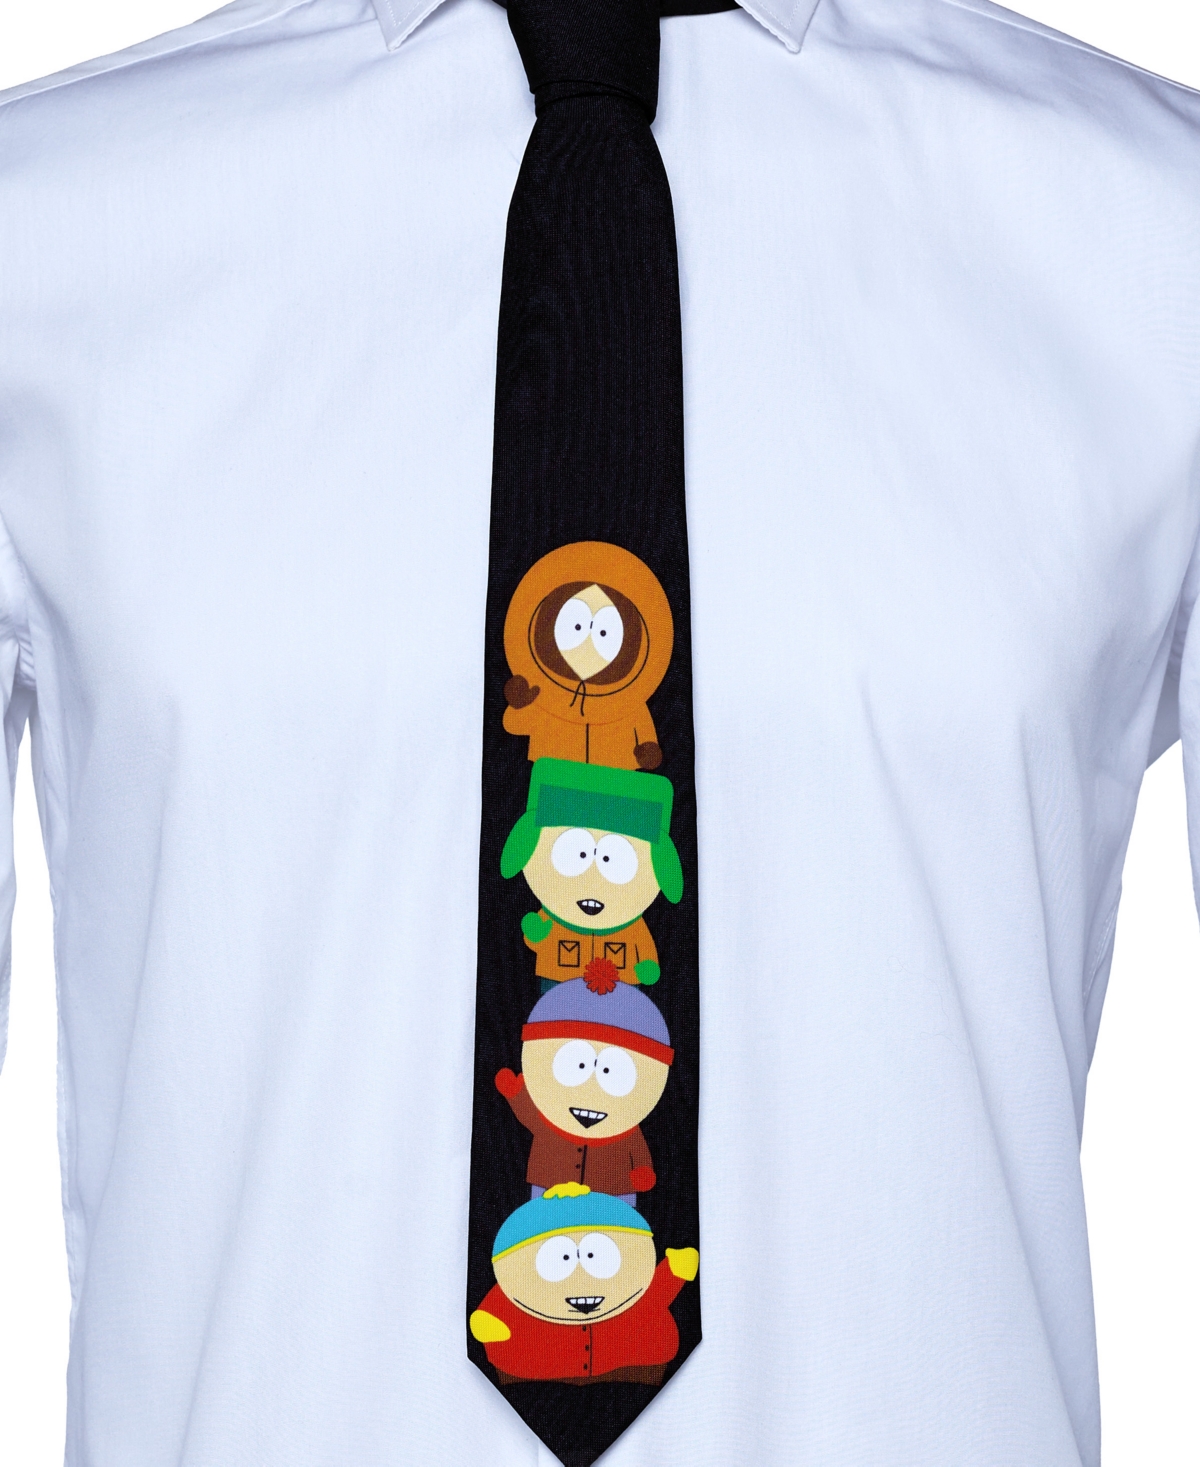 Men's South Park Tie - Miscellaneous